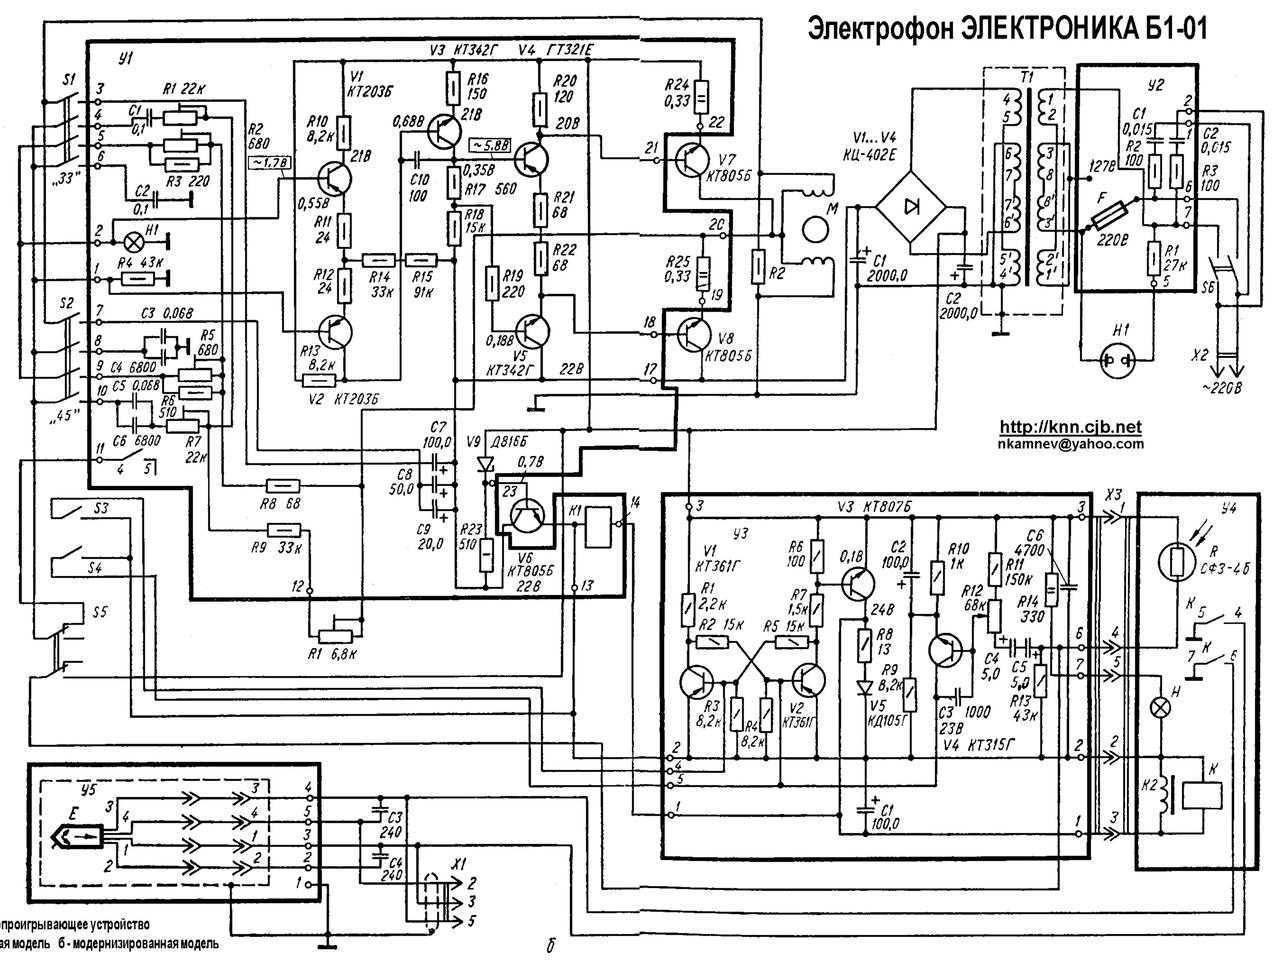 ривет всем любителям хорошего звука Я как-то писал об усилителе Электроника Б1-01 совсем давно, но в этот раз хочу представить уже обзор-продажу этого знаменитого советского усилителя, кстати на транзисторах КТ 808, да, да именно тех самых, которые стояли